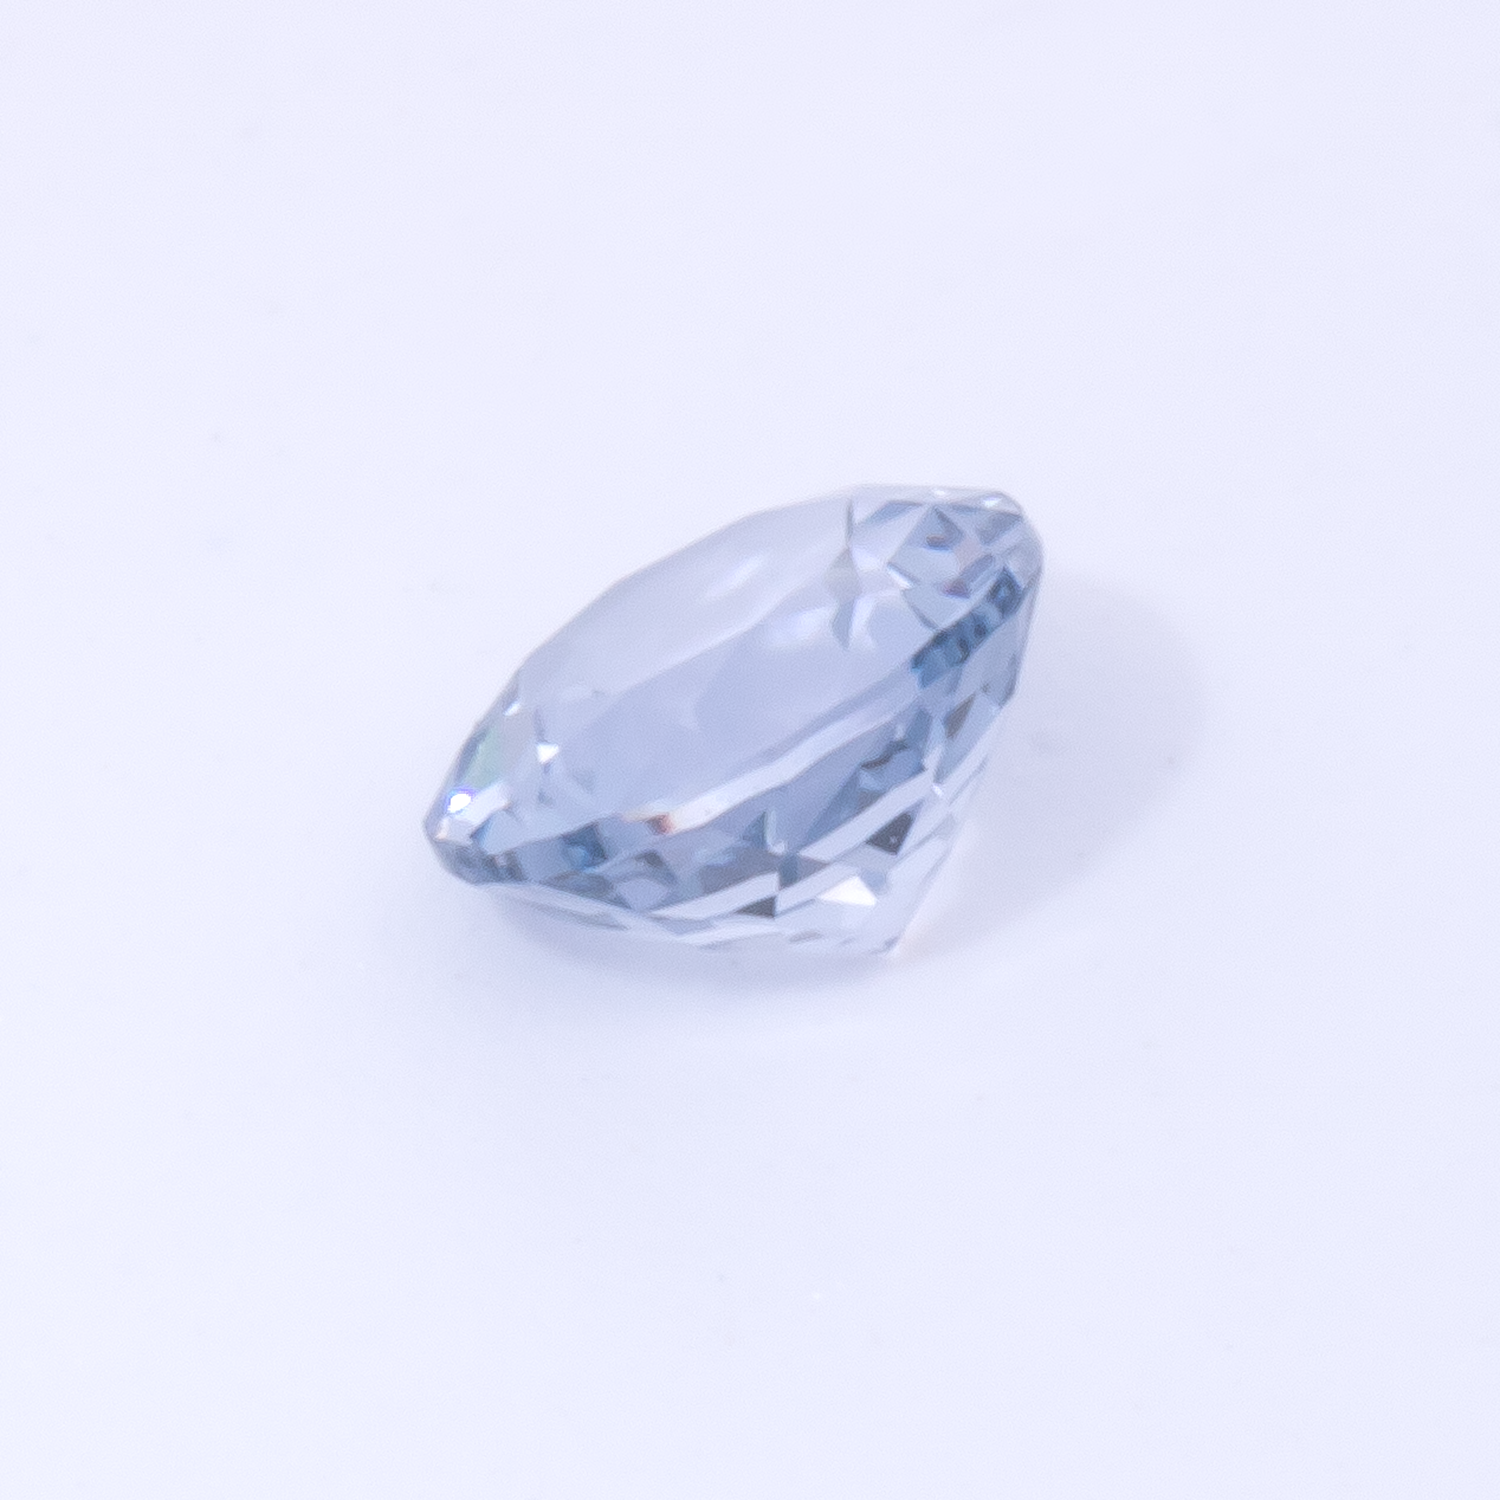 Spinell - blau, rund, 4x4 mm, 0.29 cts, Nr. SP90081